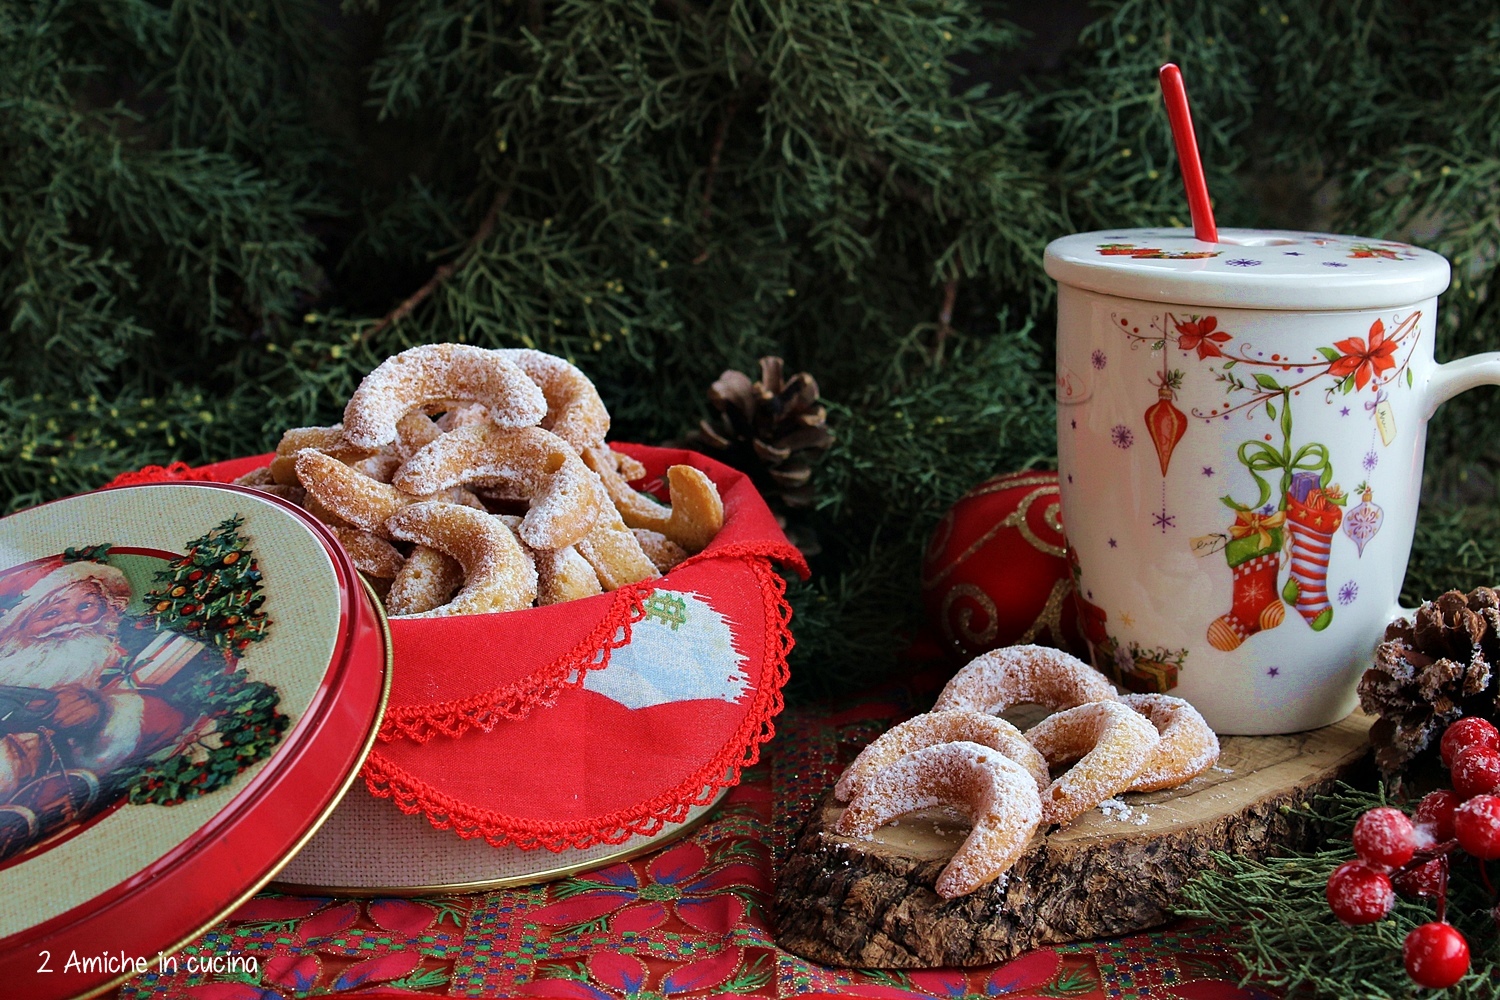 Vanillekipferl i biscotti alla vaniglia e mandorle tipici del Natale in Austria